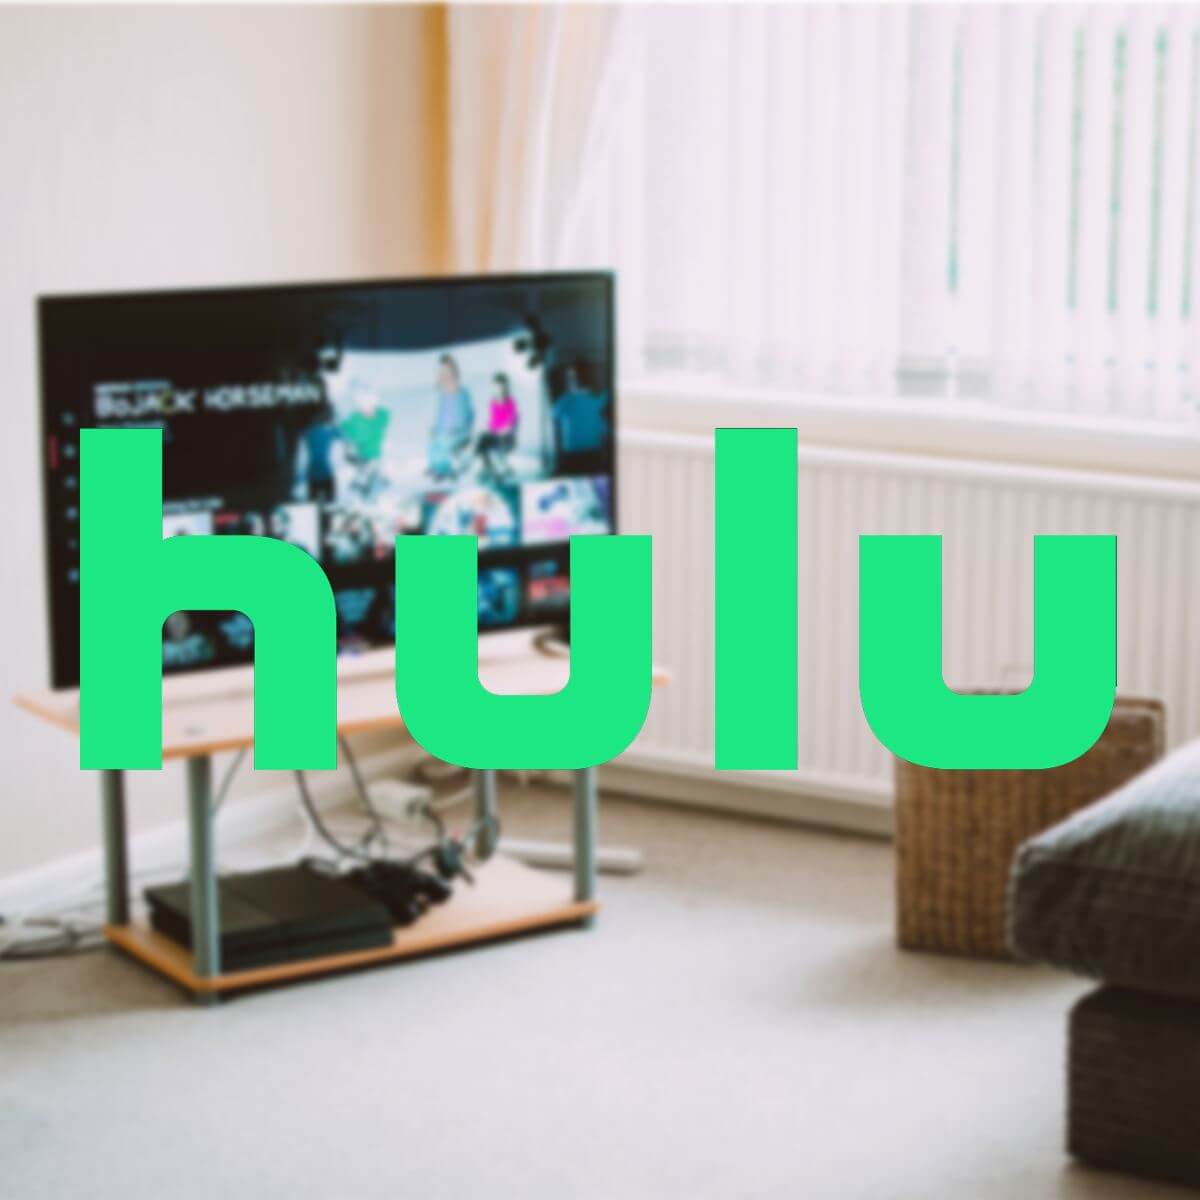 Hulu stream error